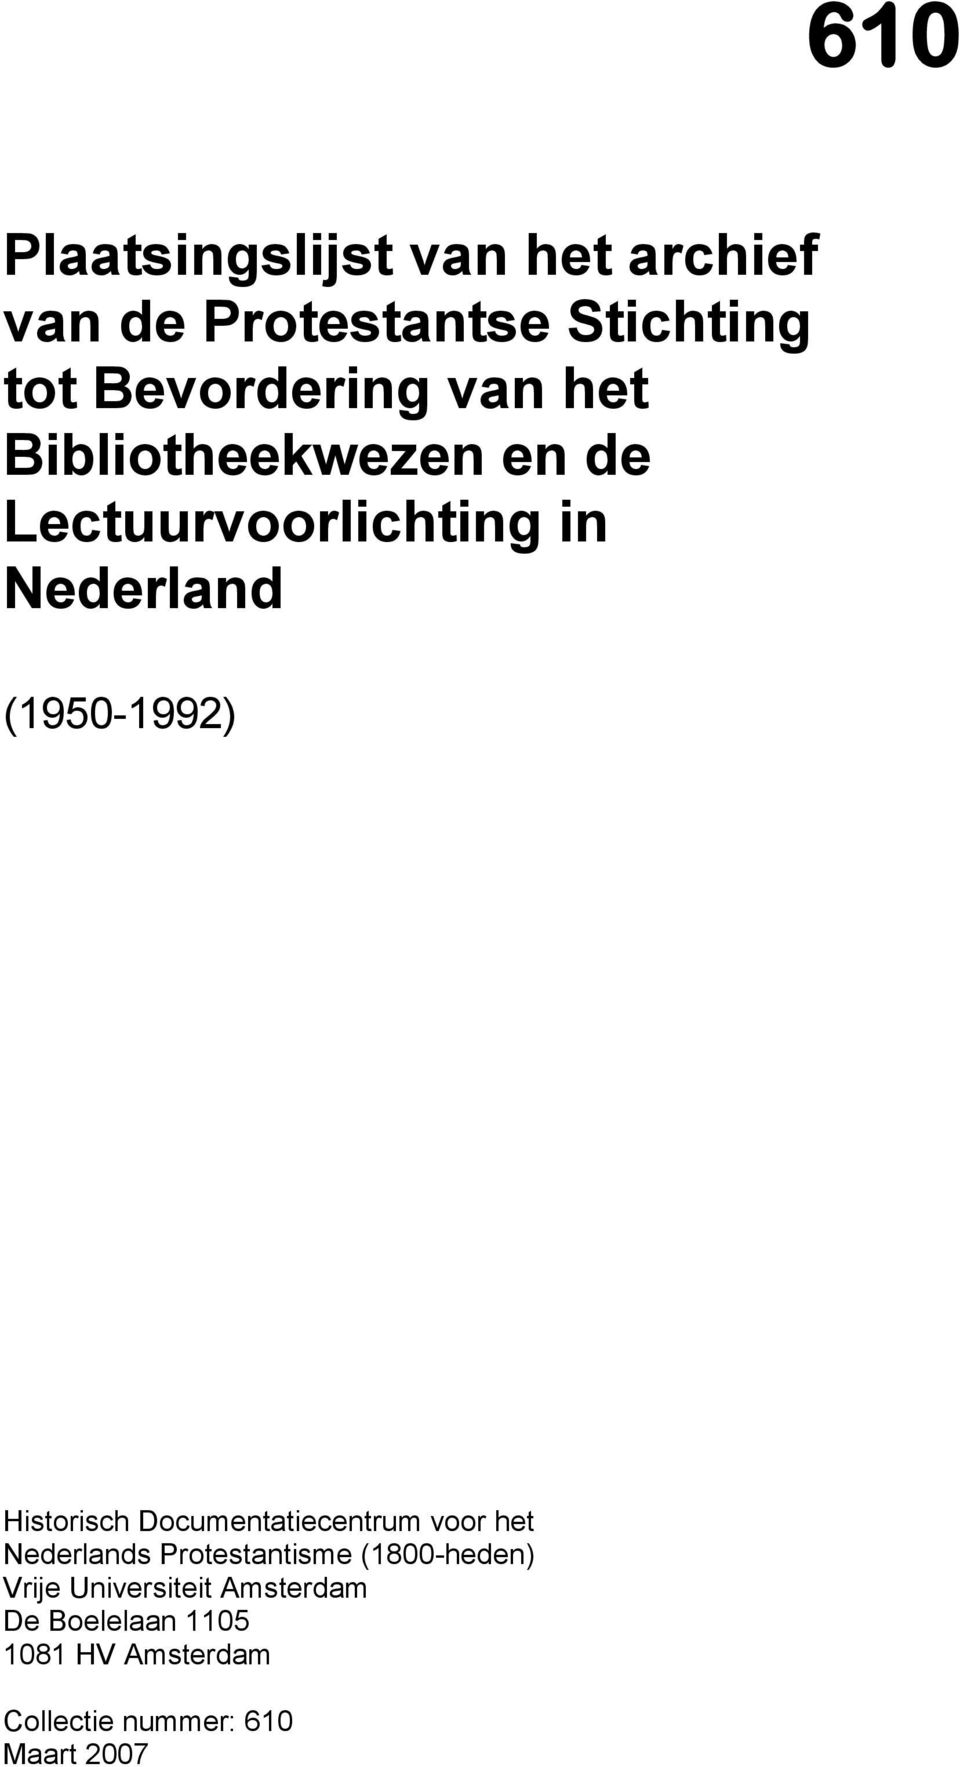 Historisch Documentatiecentrum voor het Nederlands Protestantisme (1800-heden)